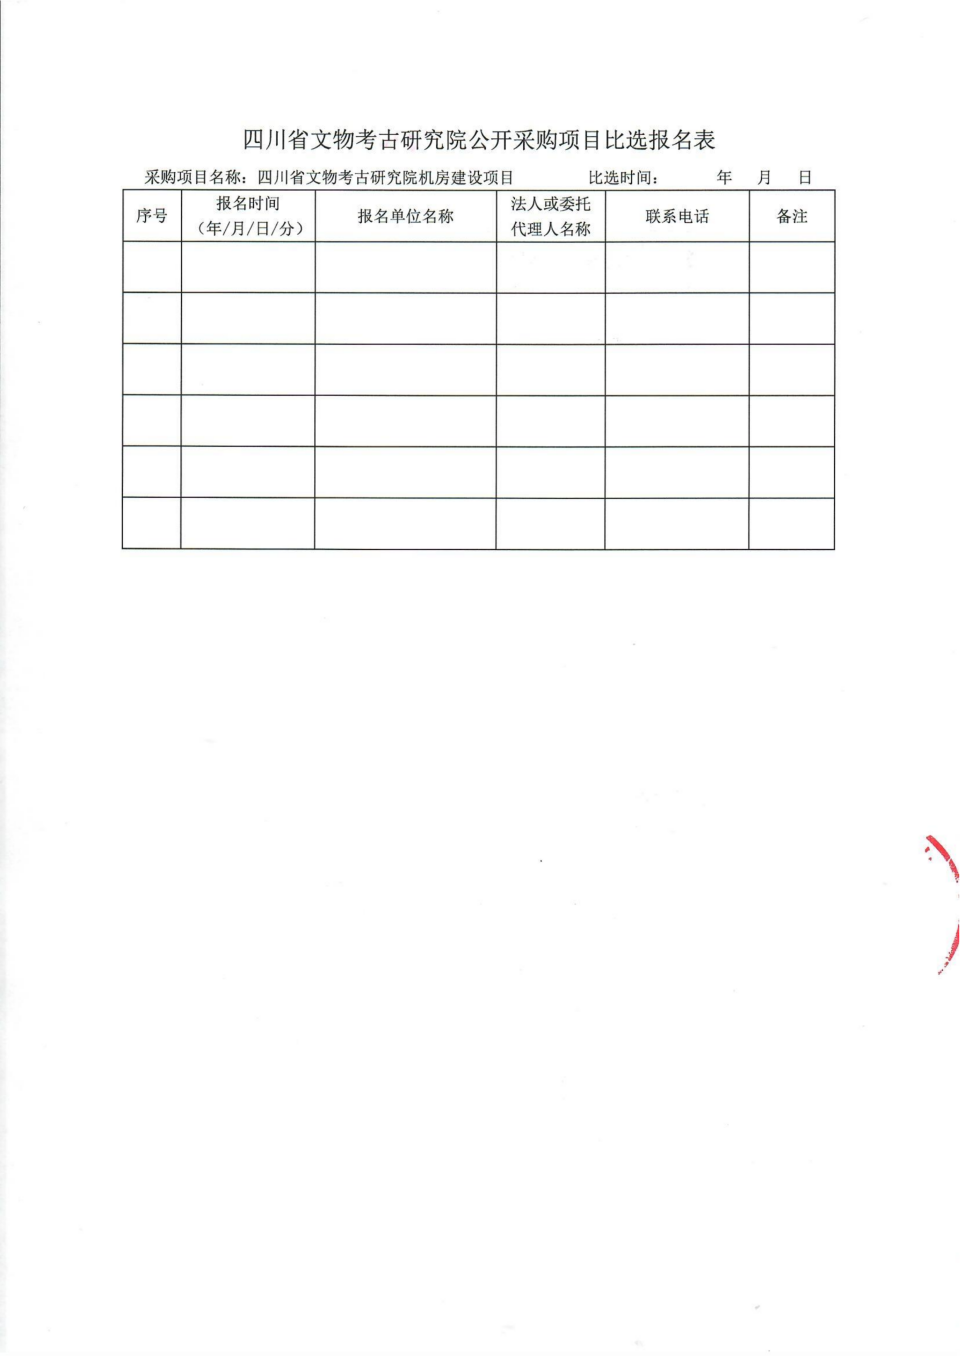 四川省文物考古研究院机房改造项目比选公告_07.png